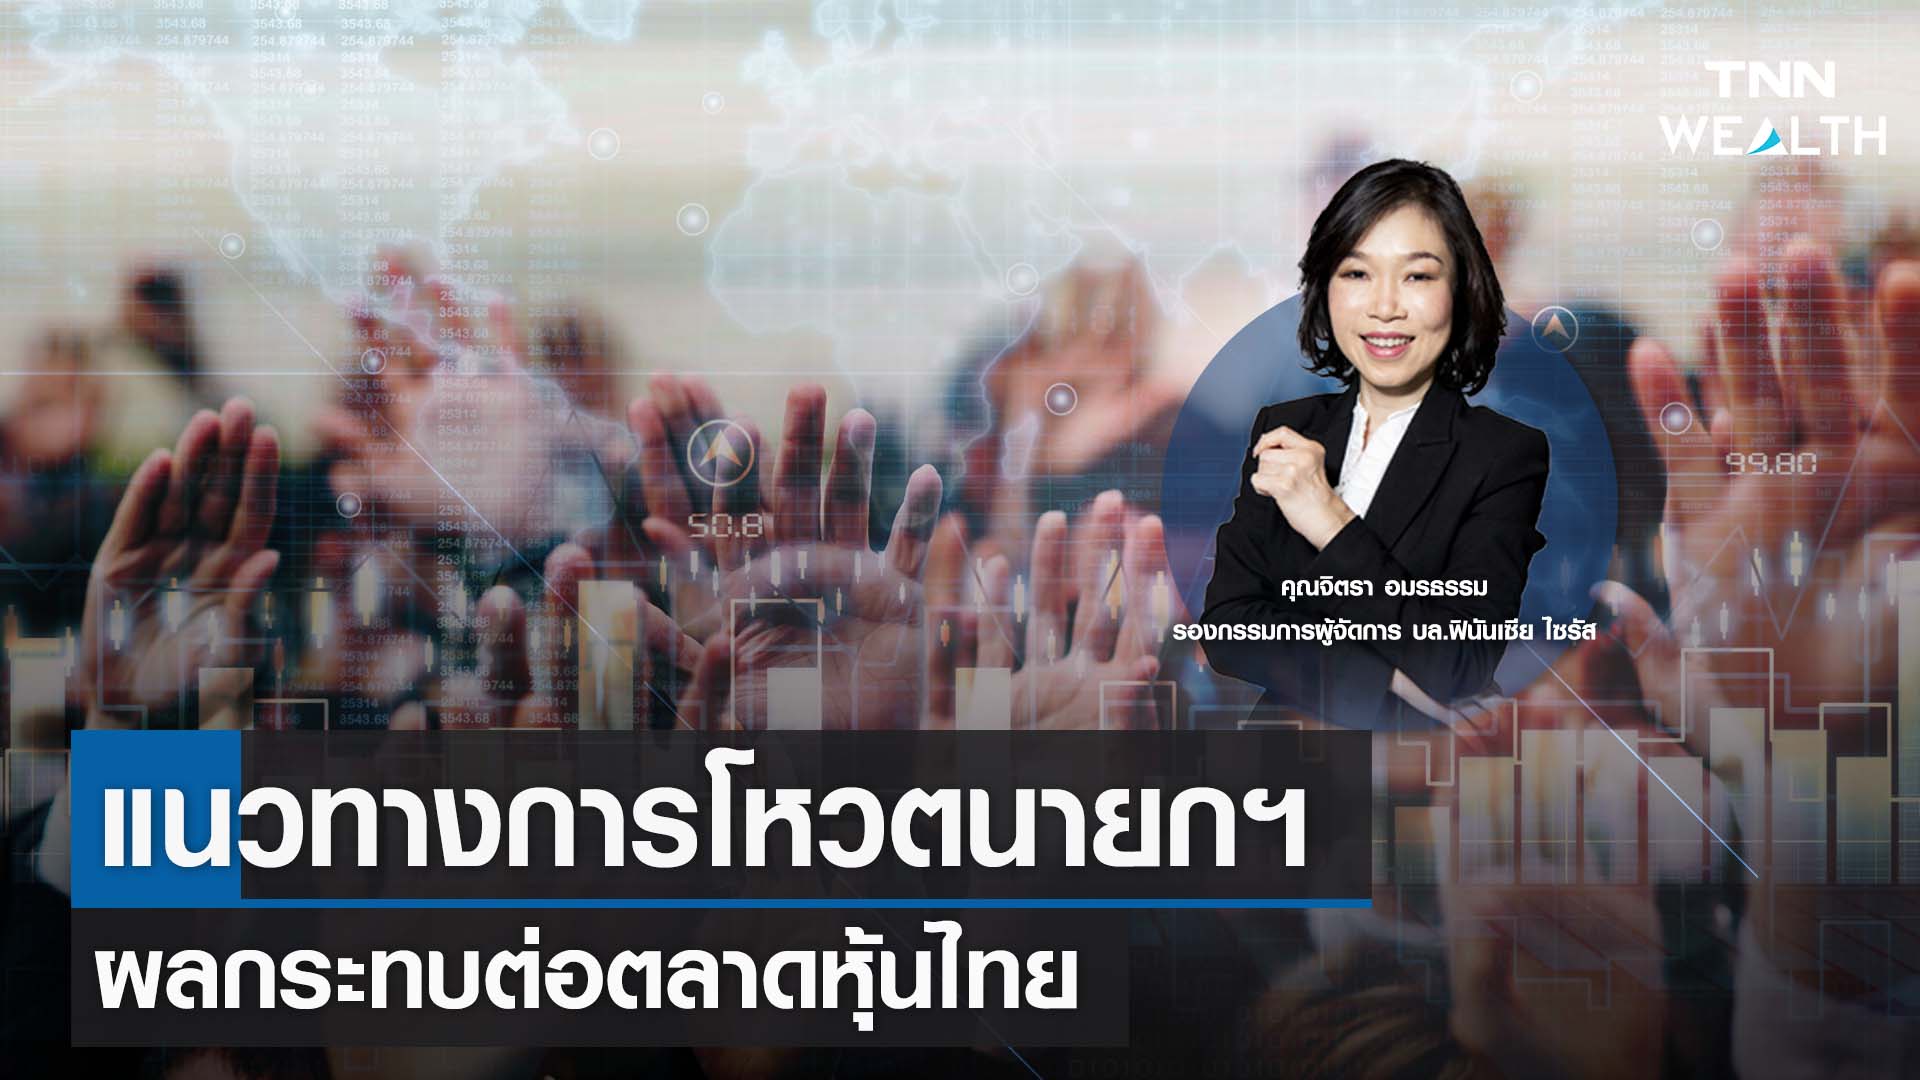 แนวทางการโหวตนายกฯ ผลกระทบต่อตลาดหุ้นไทย กับคุณจิตรา อมรธรรม I TNN WEALTH 11 ก.ค. 66